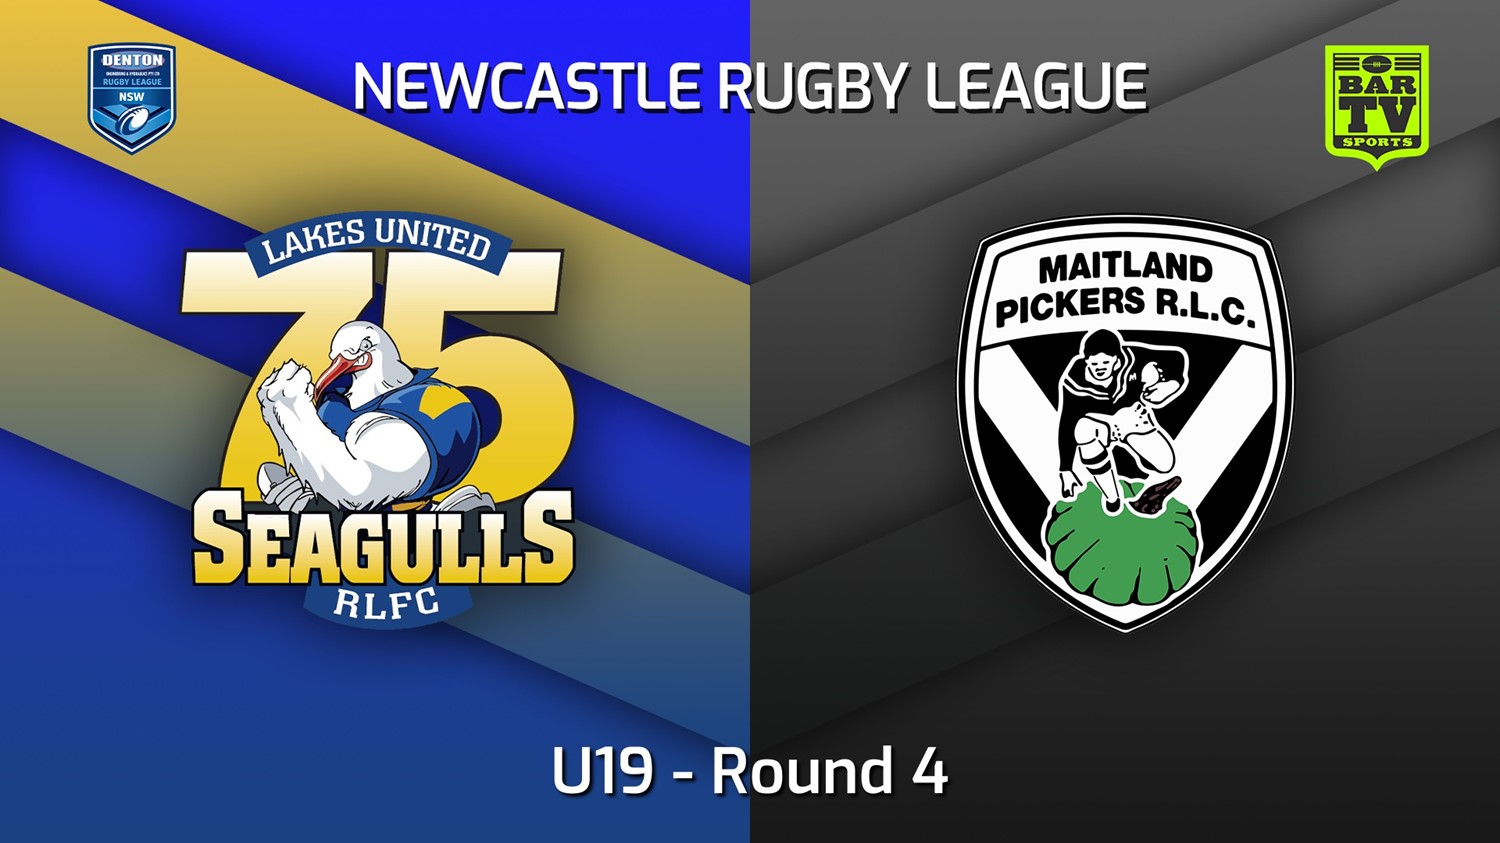 220416-Newcastle Round 4 - U19 - Lakes United v Maitland Pickers Slate Image